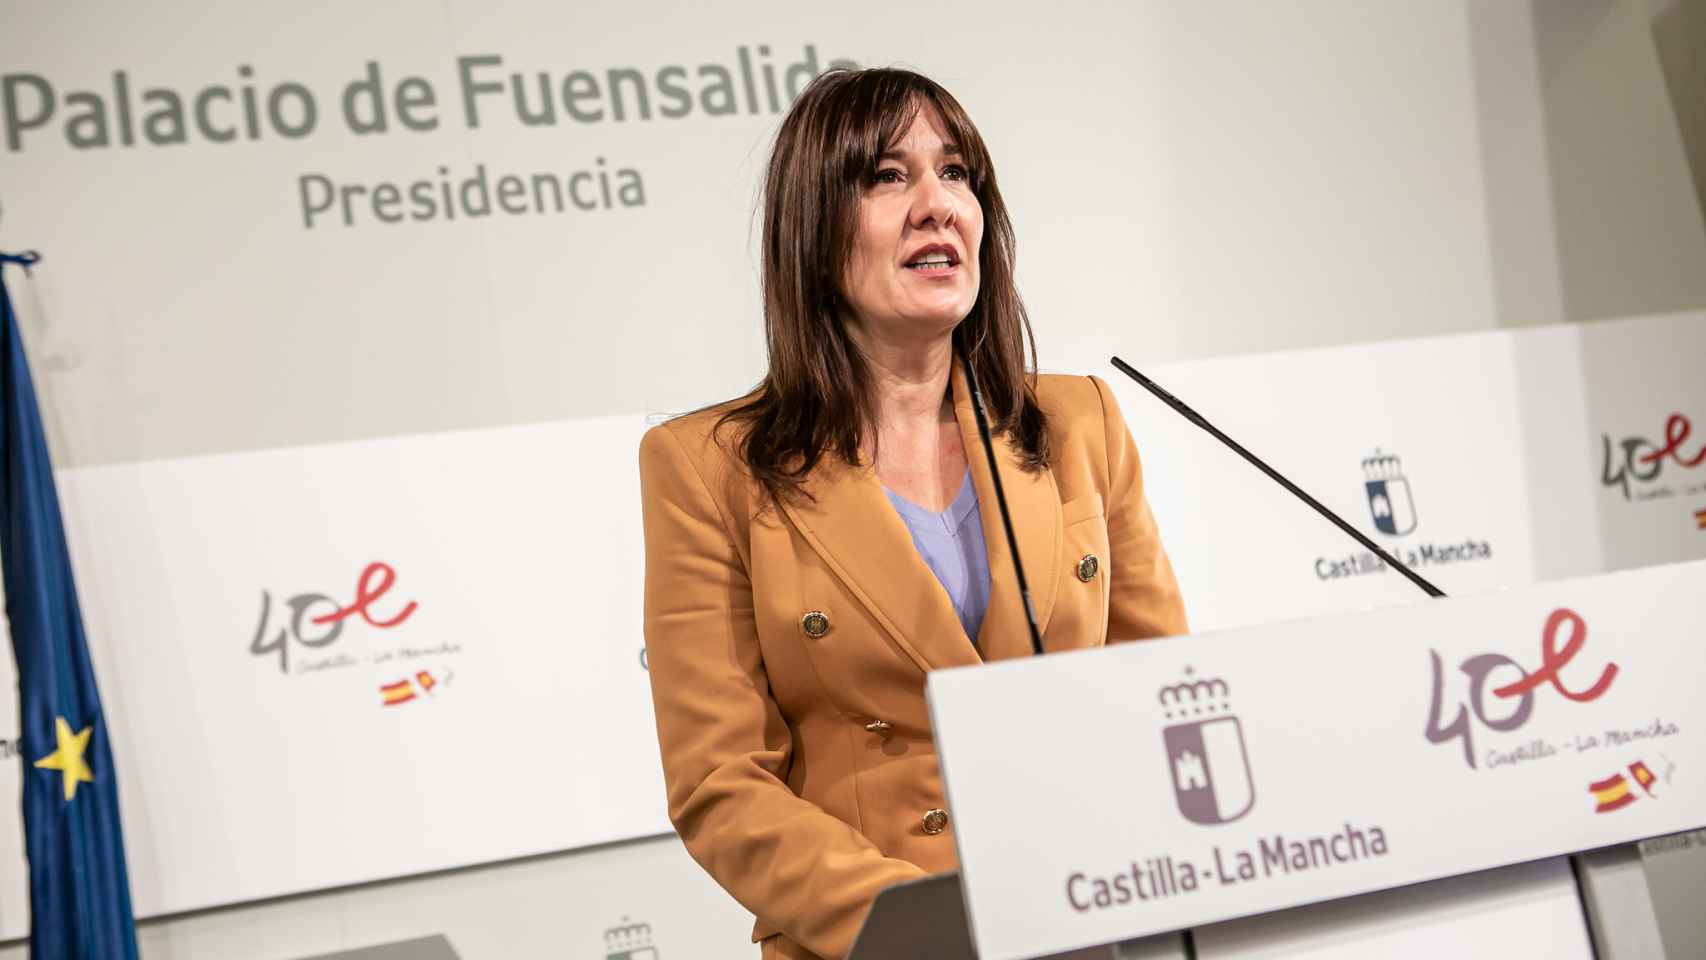 Blanca Fernández, portavoz del Gobierno de Castilla-La Mancha. Foto: JCCM